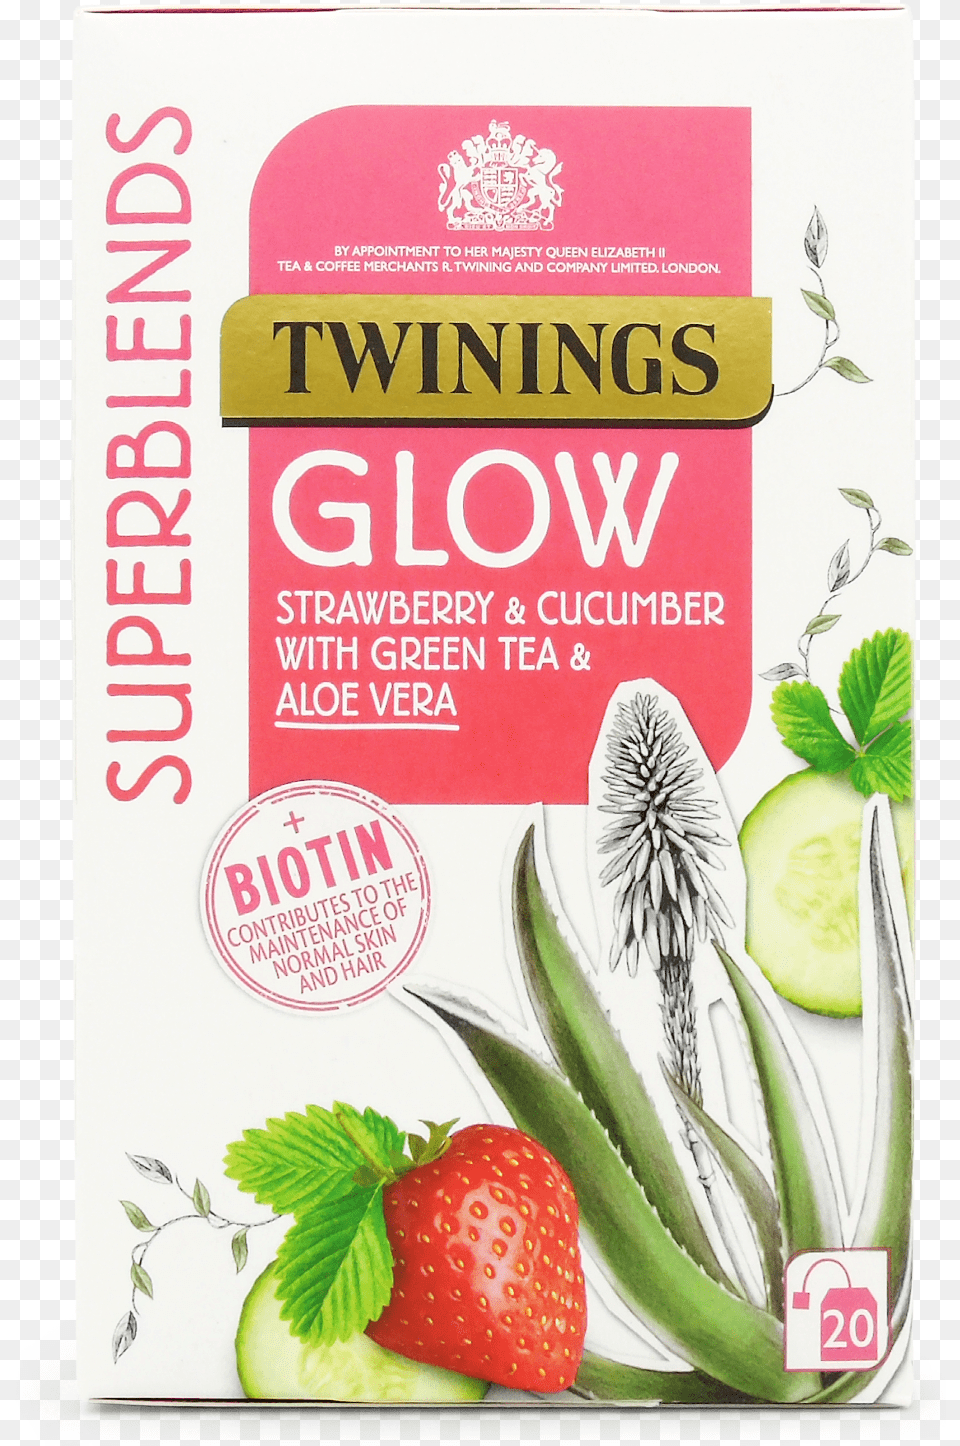 Twinings Glow Tea, Herbal, Herbs, Plant, Berry Png Image